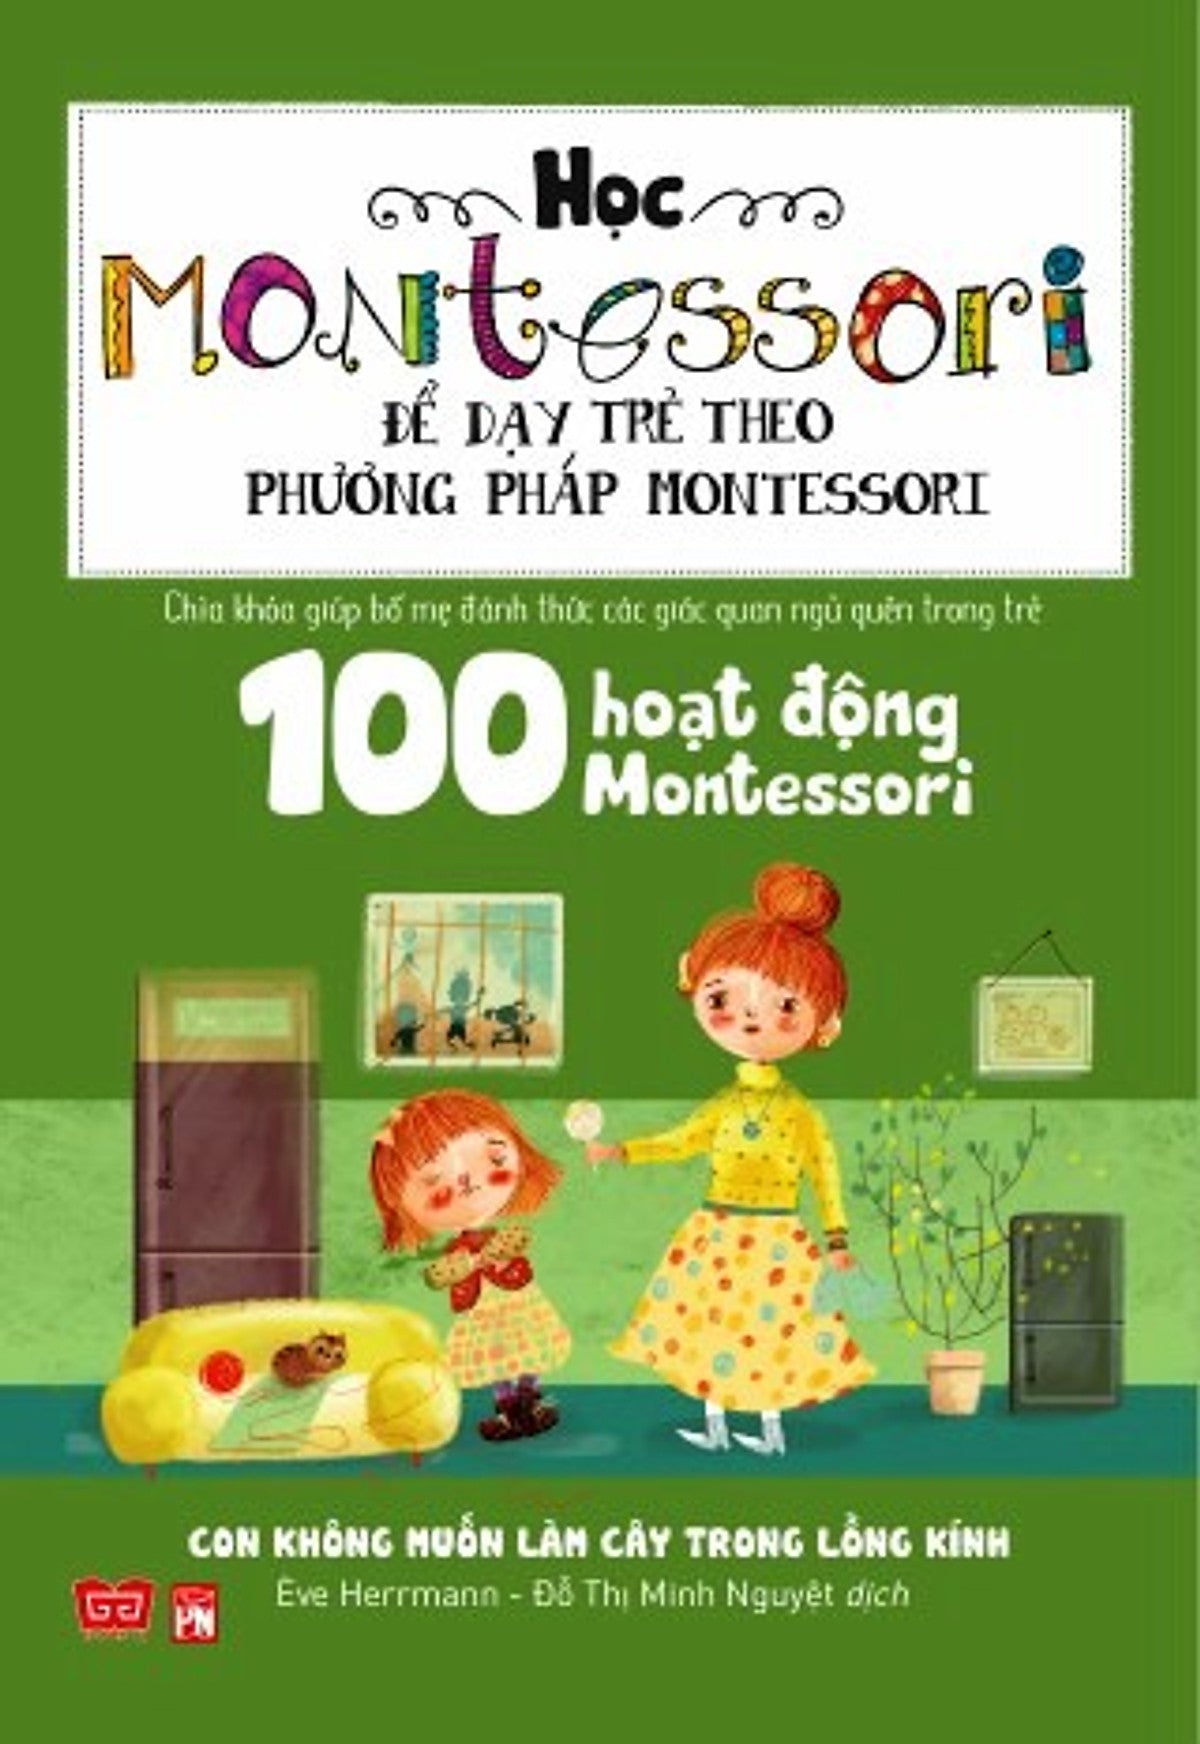 Học Montessori Để Dạy Trẻ Theo Phương Pháp Montessori - Combo 4 cuốn: Con không cần Ipad để lớn khôn, Chờ con lớn thì đã muộn, Con không muốn làm cây trong lồng kính, Cha mẹ nên chuẩn bị cho trẻ tập đọc